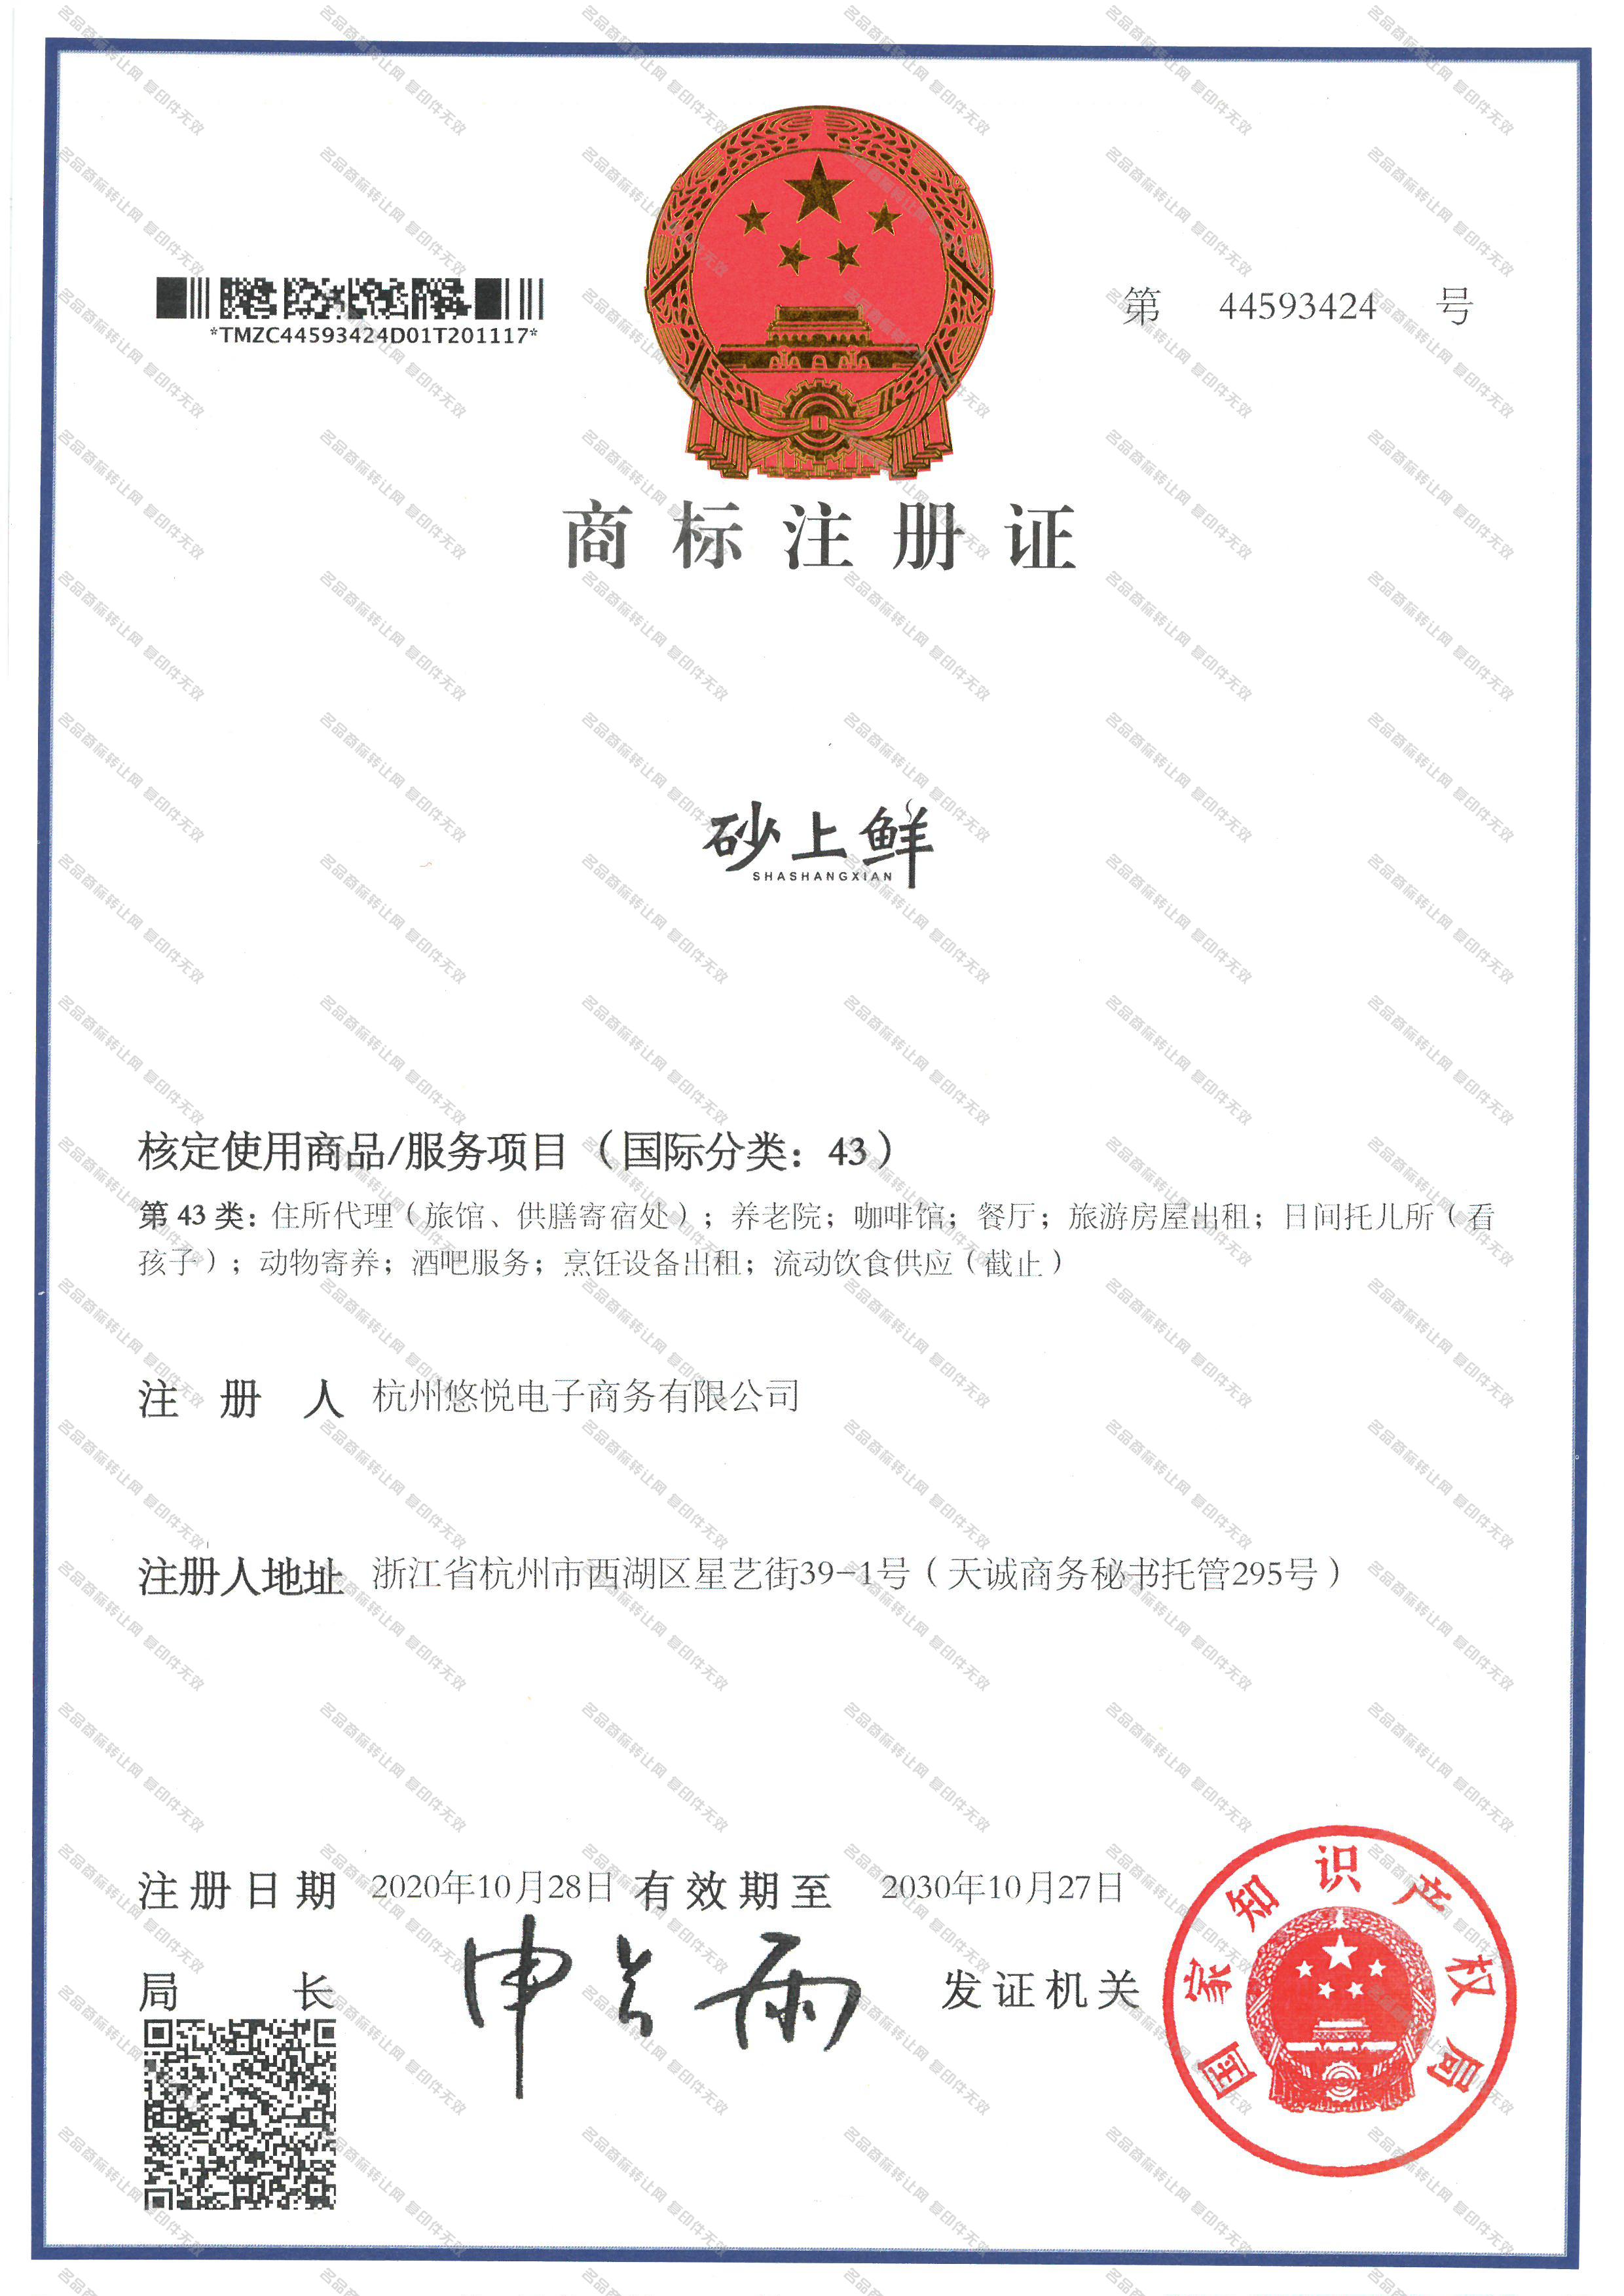 砂上鲜 SHA SHANG XIAN注册证